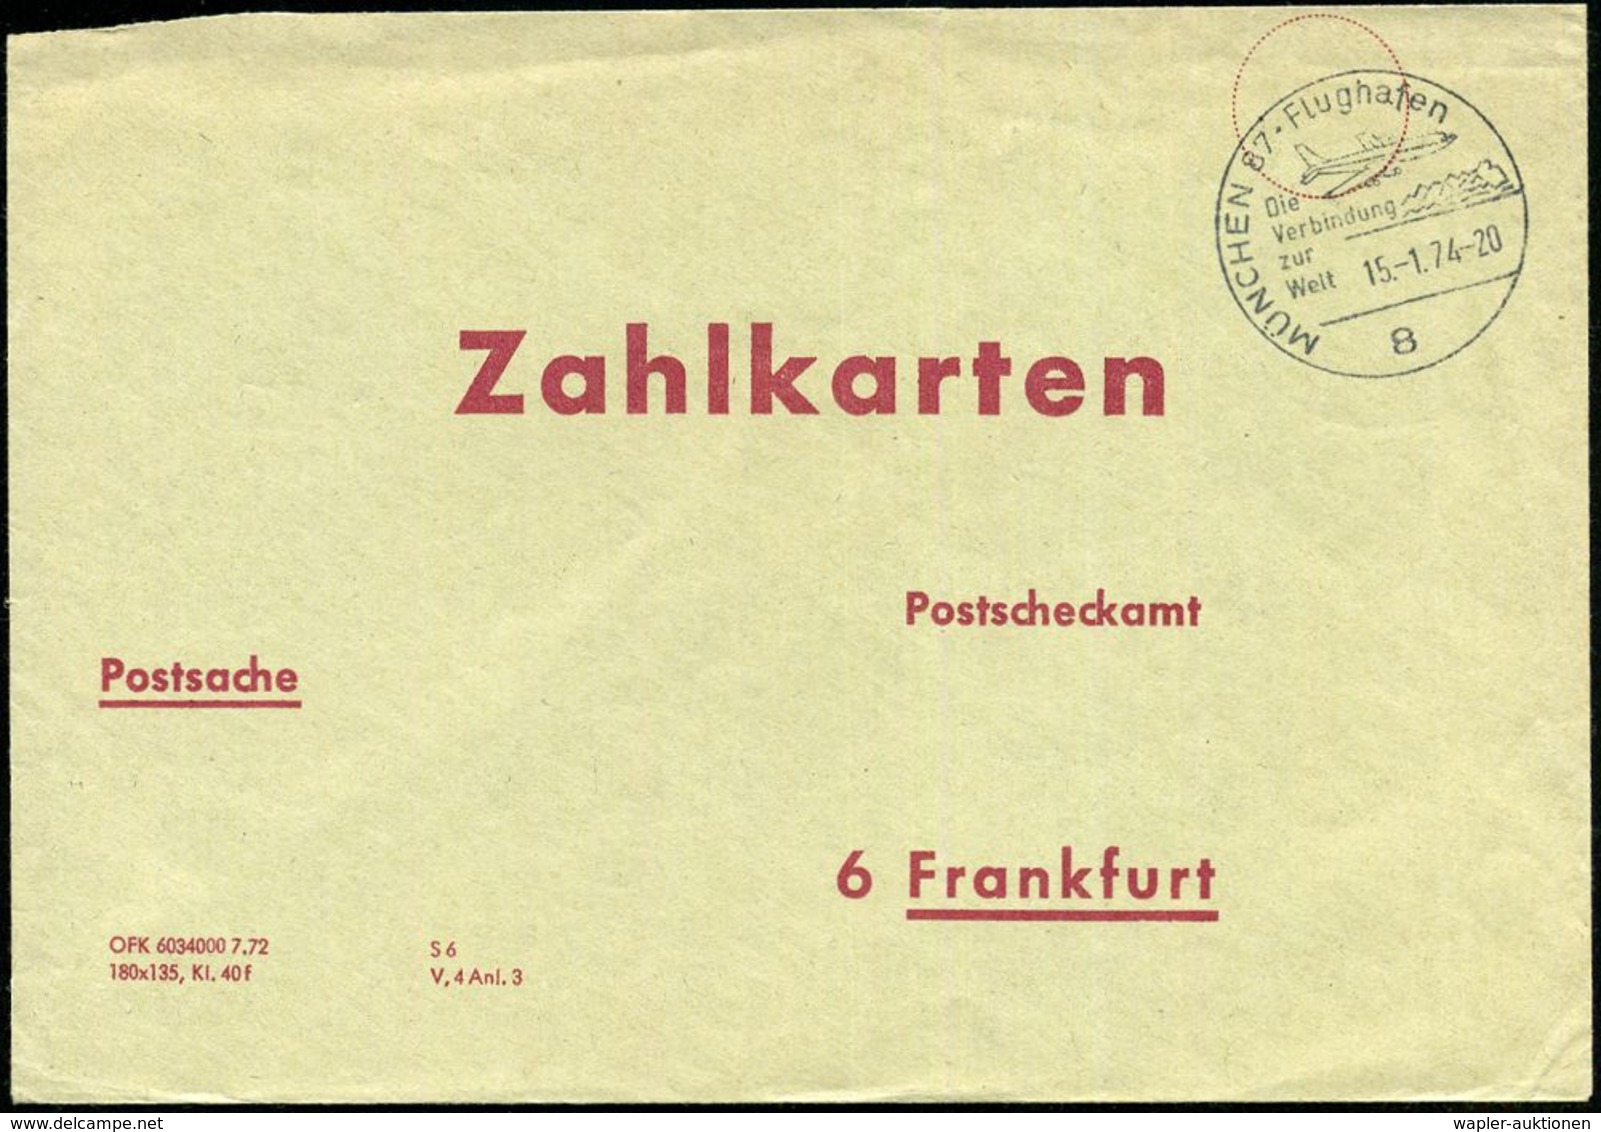 8 MÜNCHEN 87 - Flughafen/ Die/ Verbindung/ Zur/ Welt 1974 (15.1.) HWSt = Ziviljet Auf Psch-Innendienst-Bf.: Zahlkarten P - Altri (Aria)